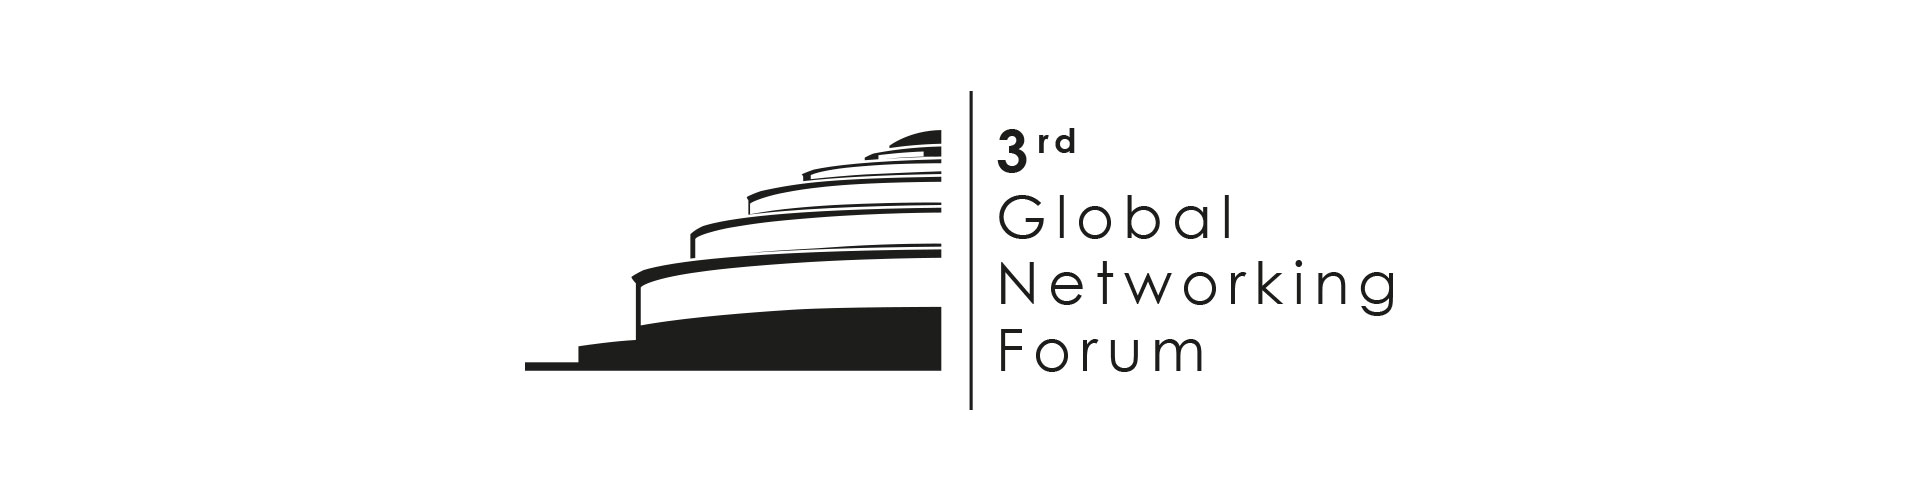 Kevin Hogan - Gość Specjalny 3rd Global Networking Forum!